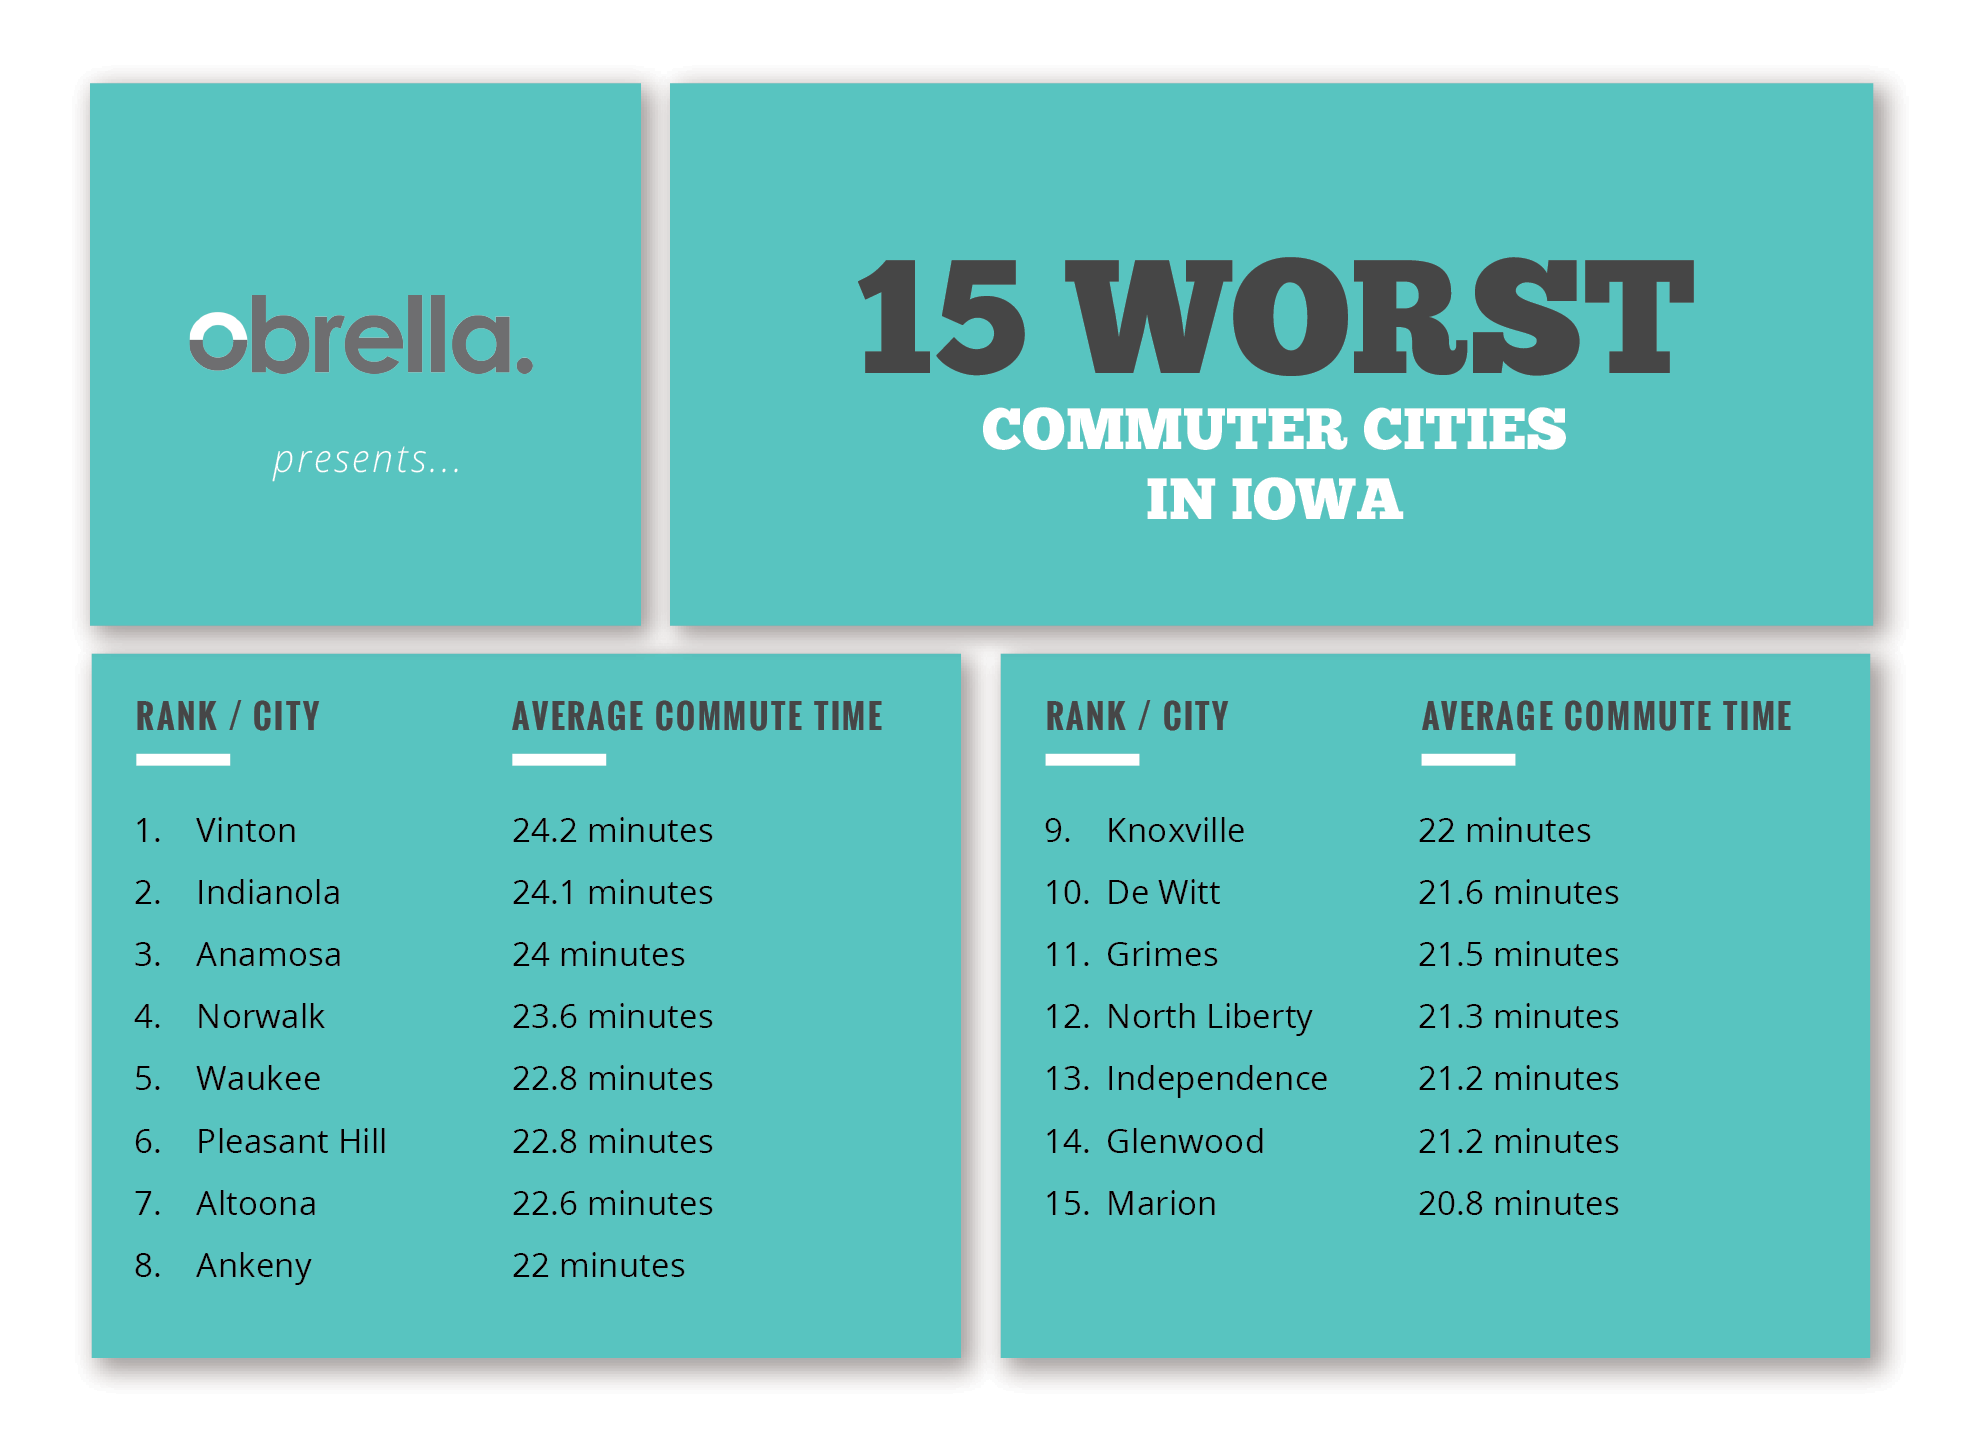 Worst Commuter Cities in Iowa